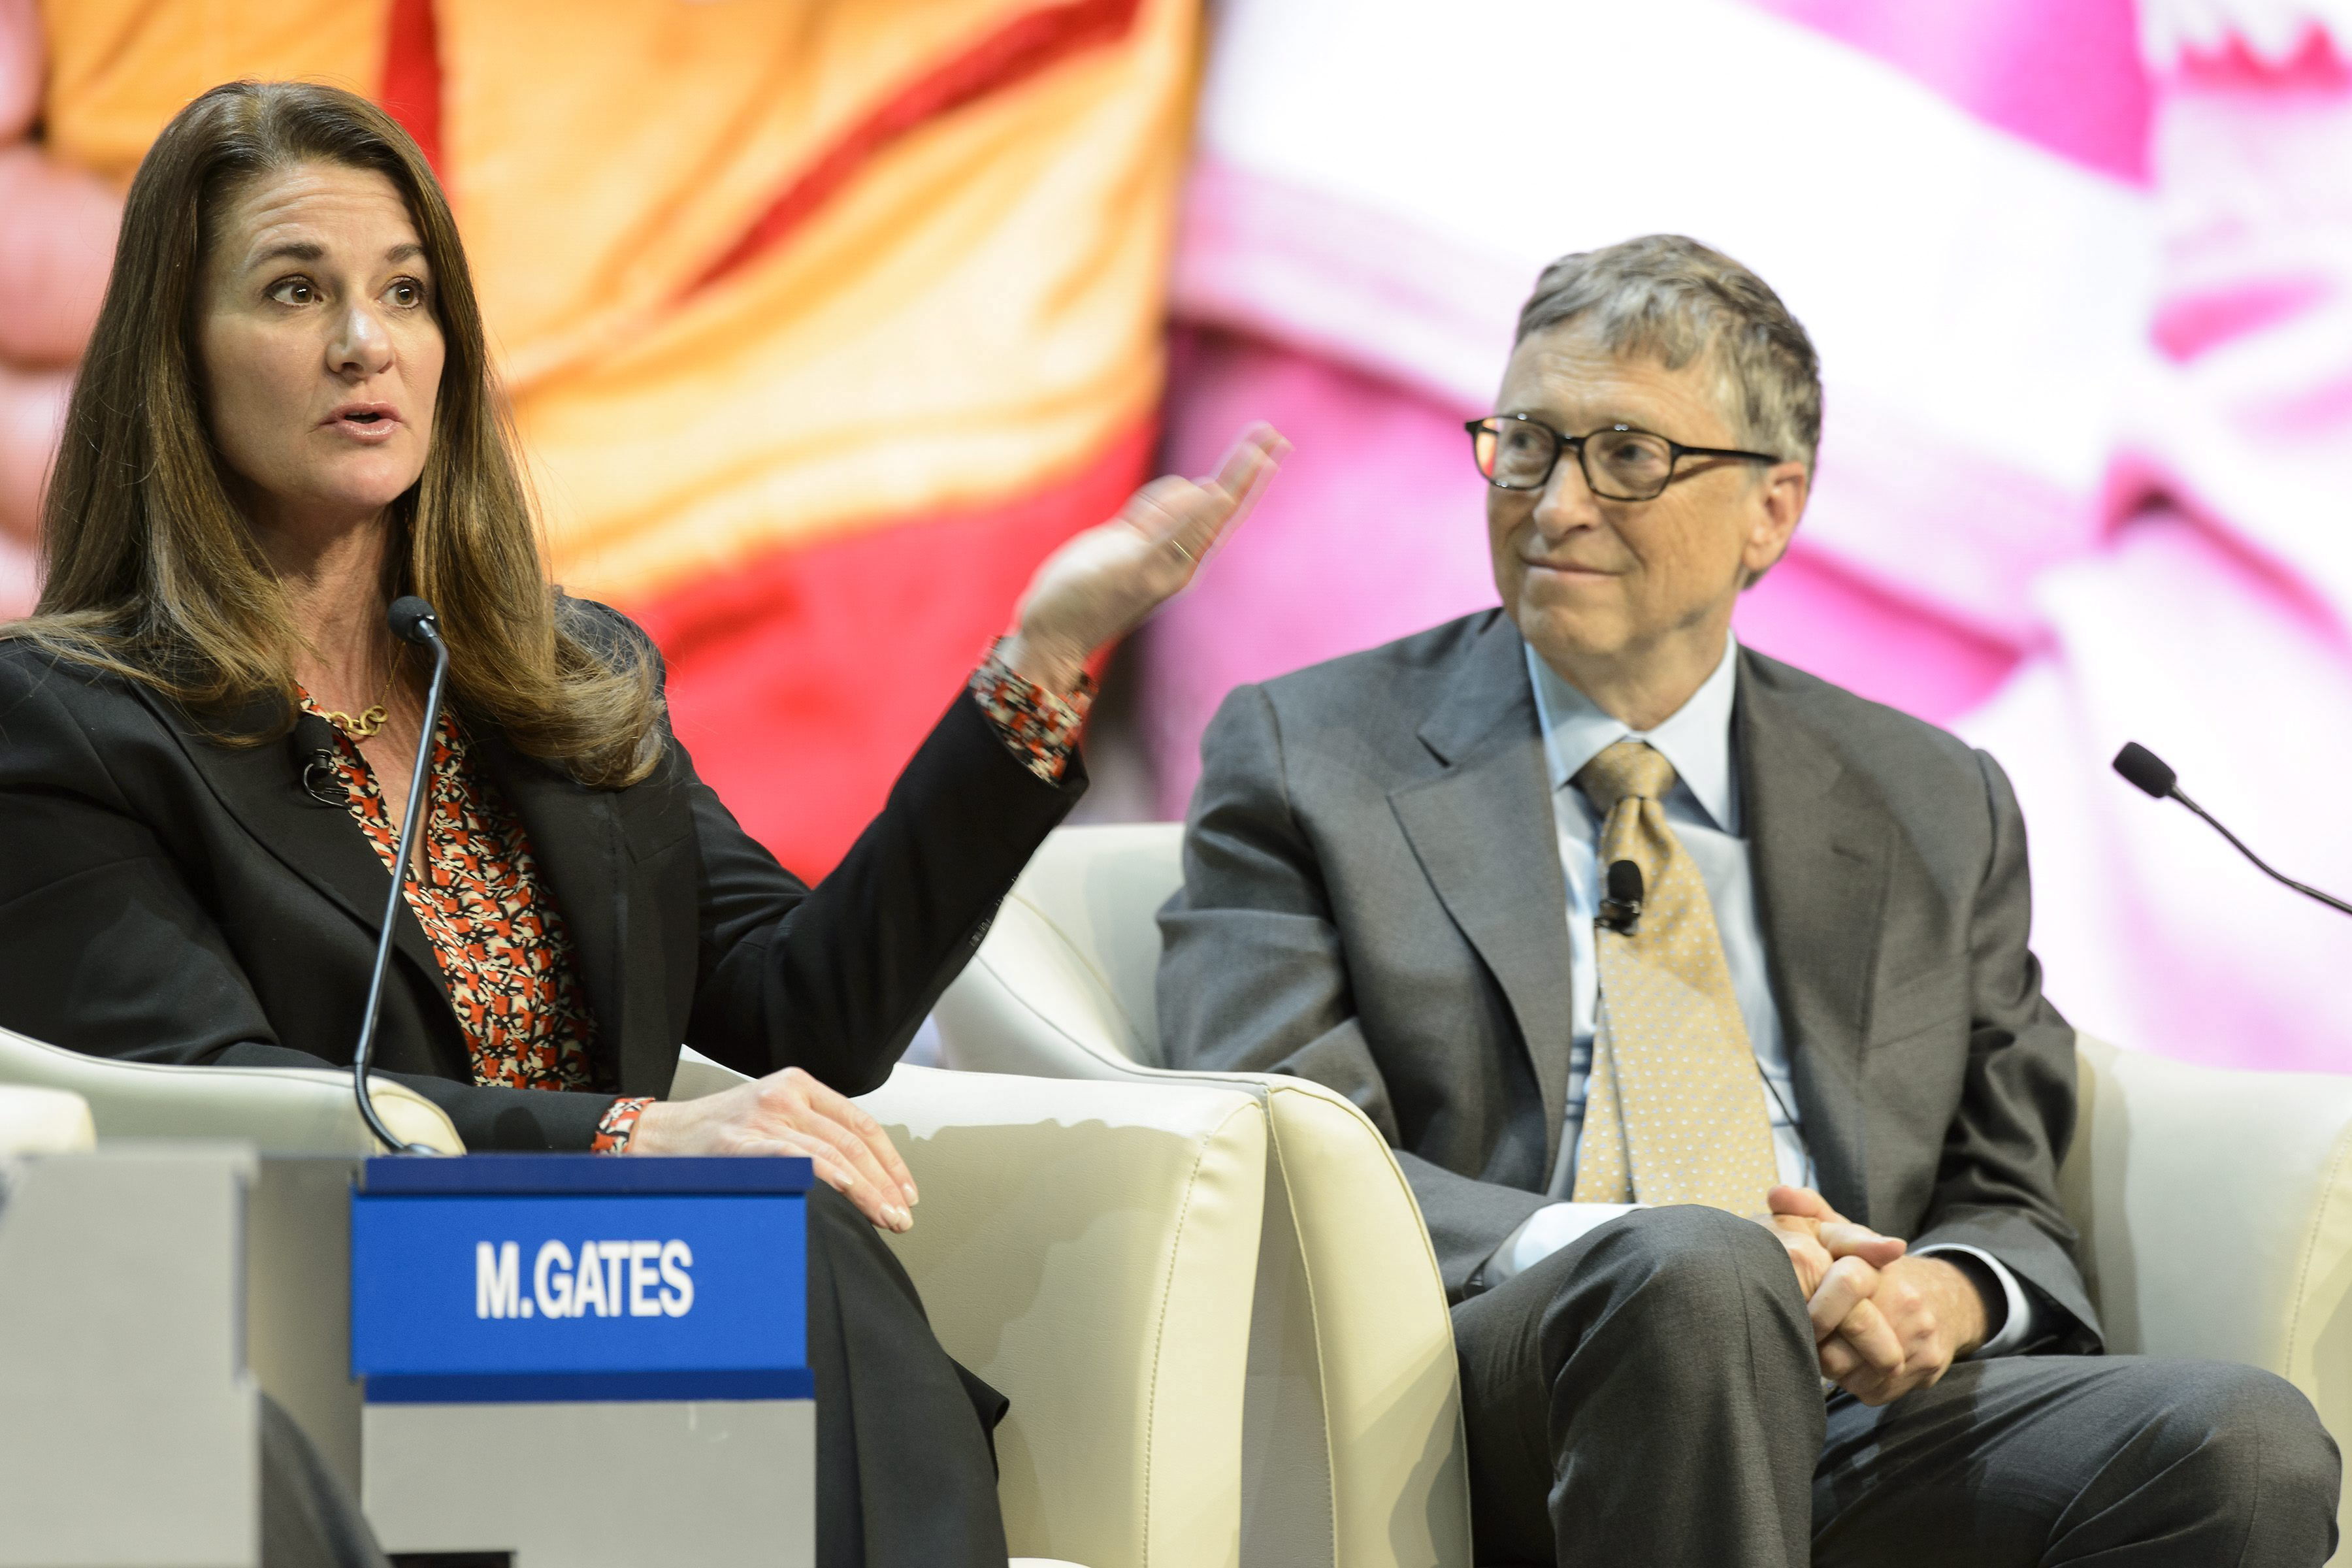 El cofundador de Microsoft y filántropo Bill Gates participa, junto con su esposa, Melinda Gates, copresidenta junto con él de la Fundación Bill y Melinda Gates, durante una mesa redonda (EFE/ Laurent Gillieron)